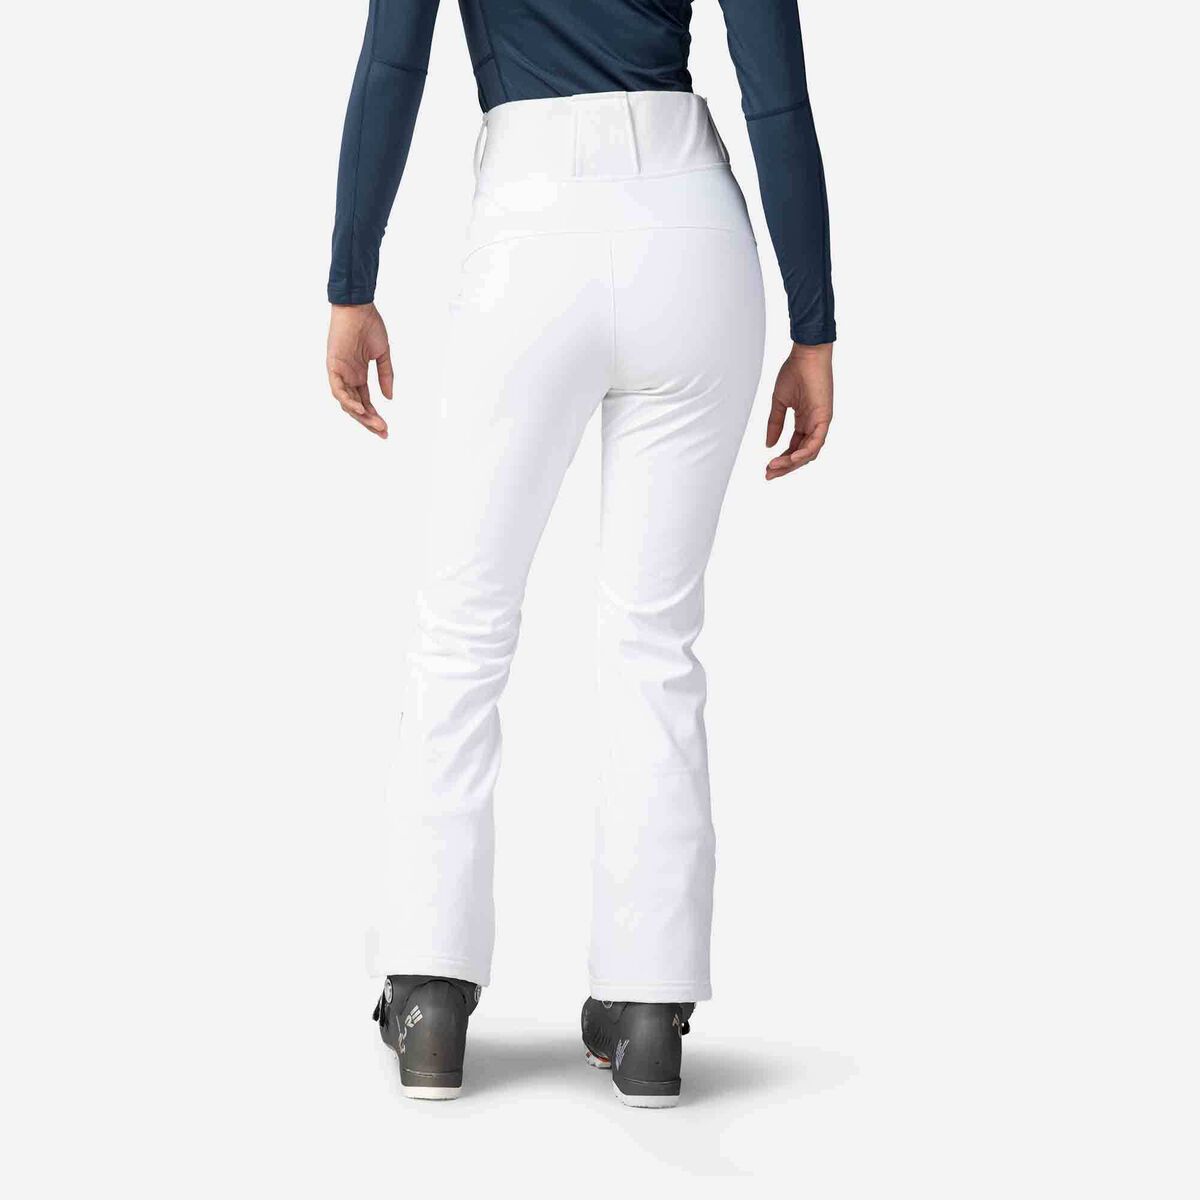 Rossignol Women's Soft Shell Ski pants White